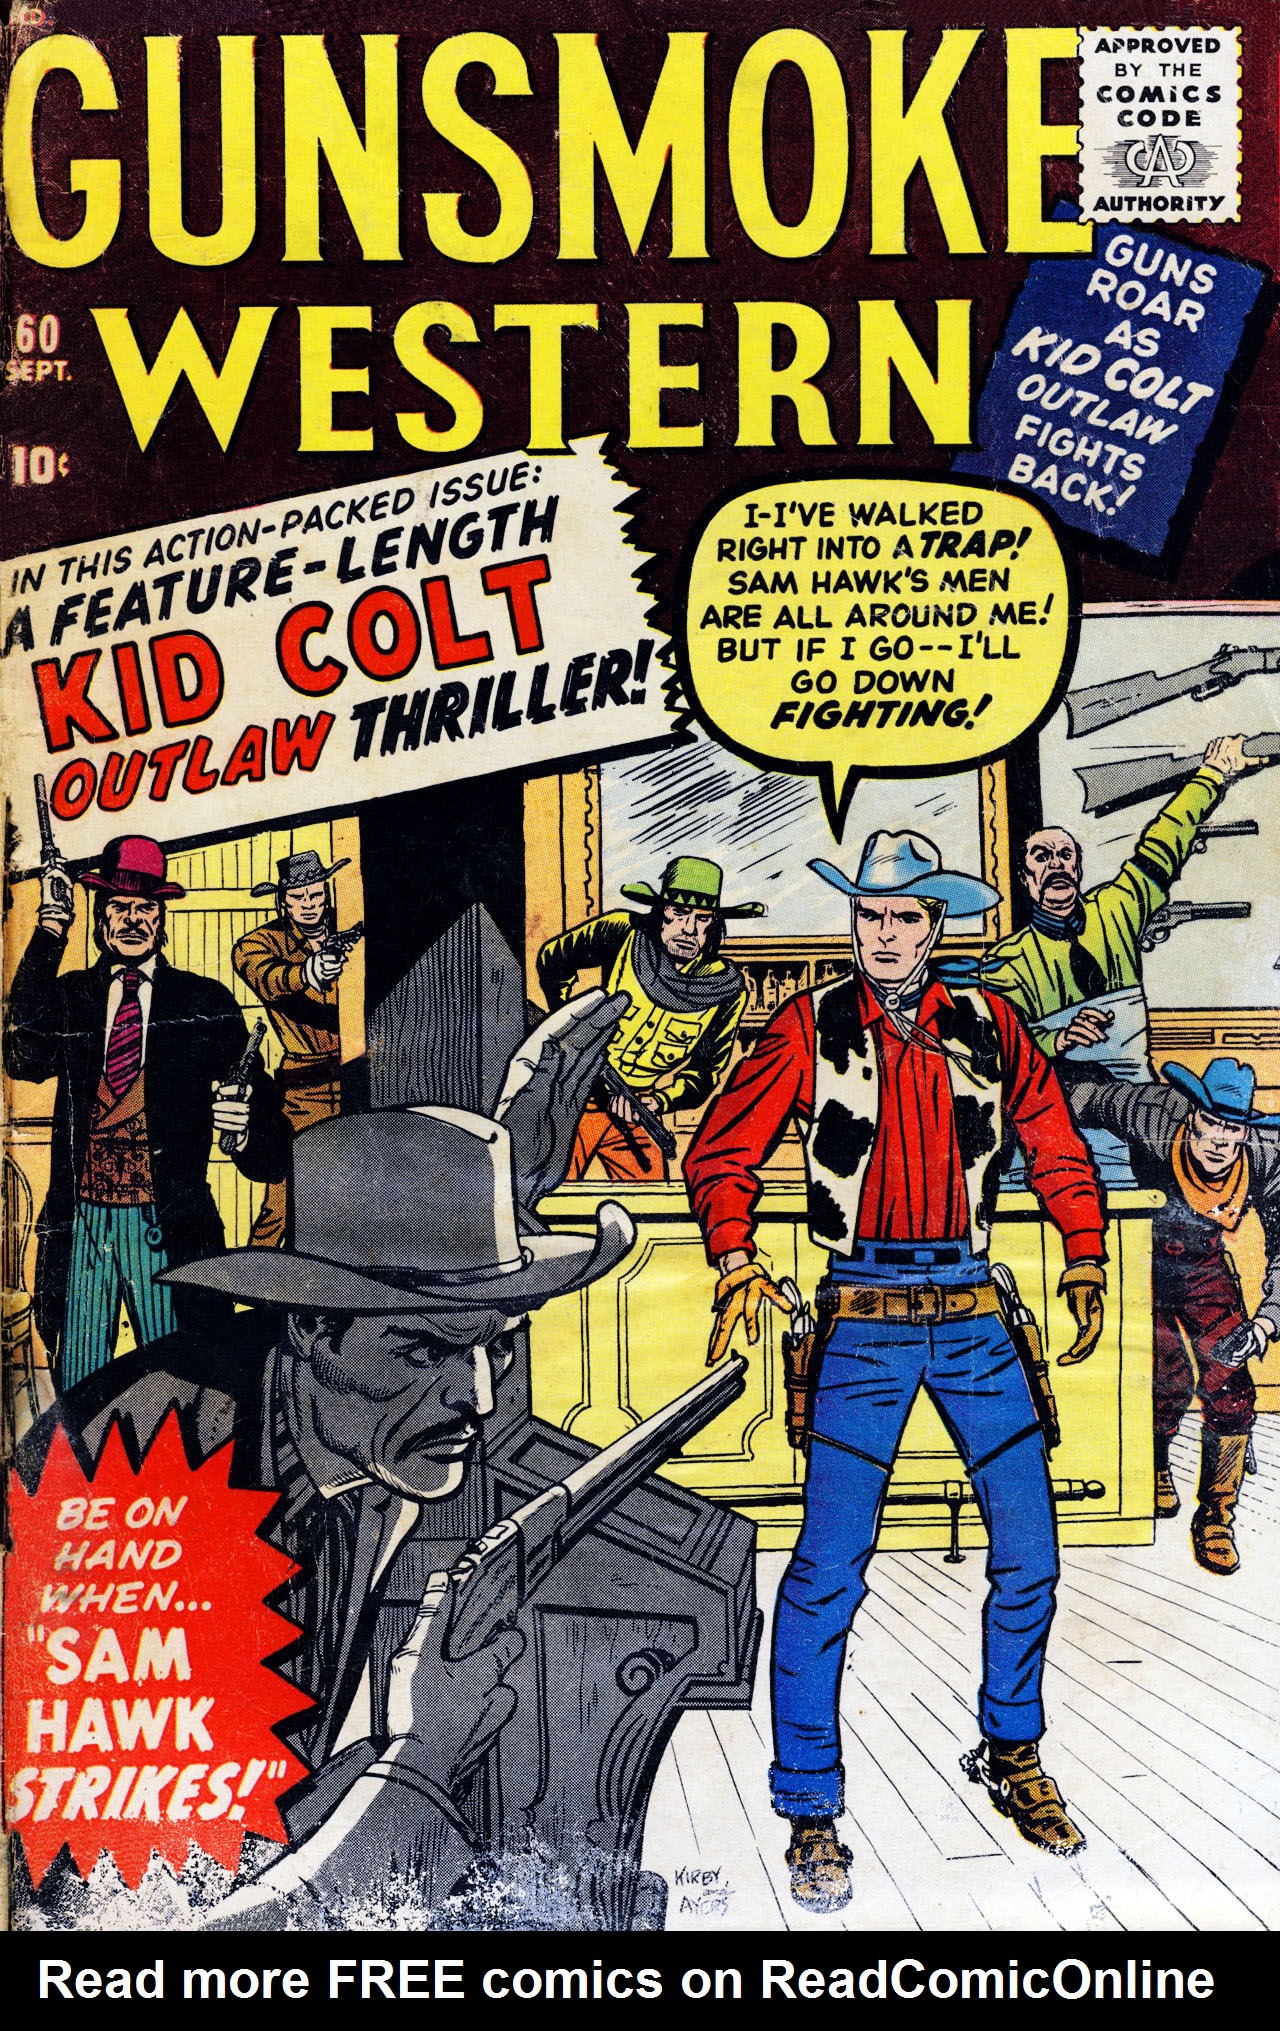 Read online Gunsmoke Western comic -  Issue #60 - 1